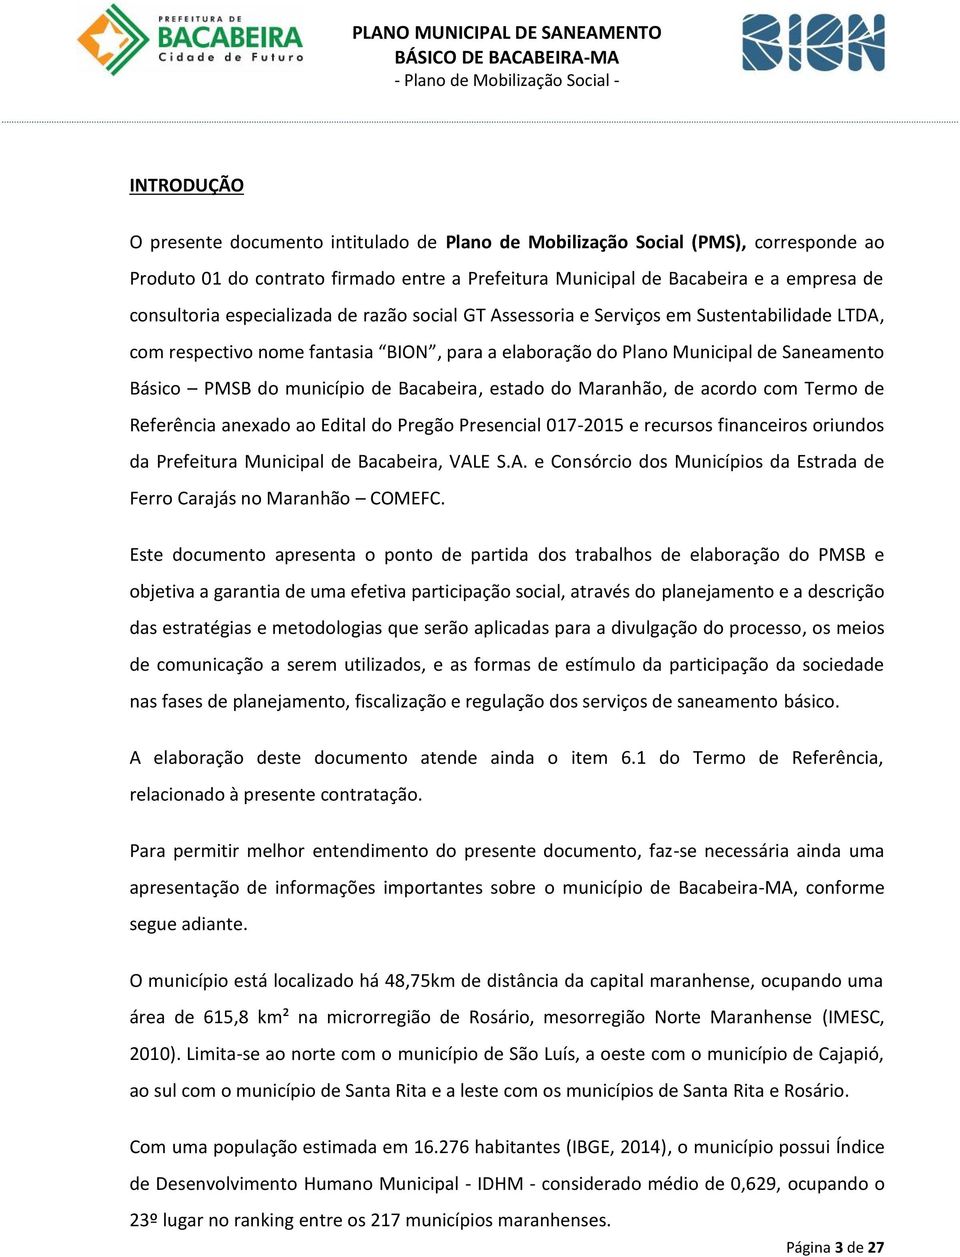 Bacabeira, estado do Maranhão, de acordo com Termo de Referência anexado ao Edital do Pregão Presencial 017-2015 e recursos financeiros oriundos da Prefeitura Municipal de Bacabeira, VAL